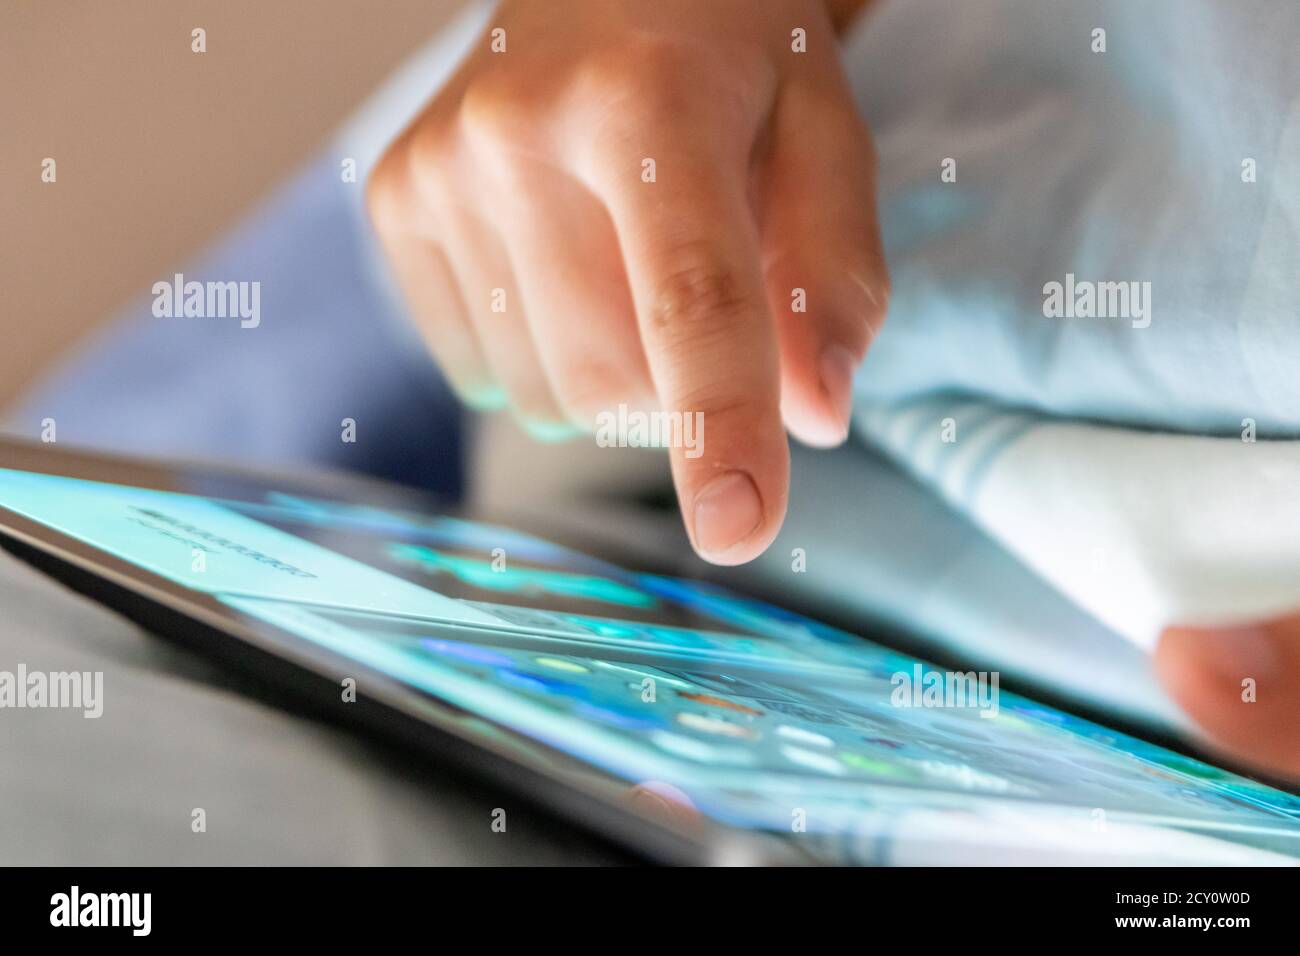 L'enfant utilise une tablette avec sa main au bout des doigts avant aller au lit et cause de mauvais sommeil et de rêves avec les jeux et les médias intelligents comme divertissement mobile Banque D'Images